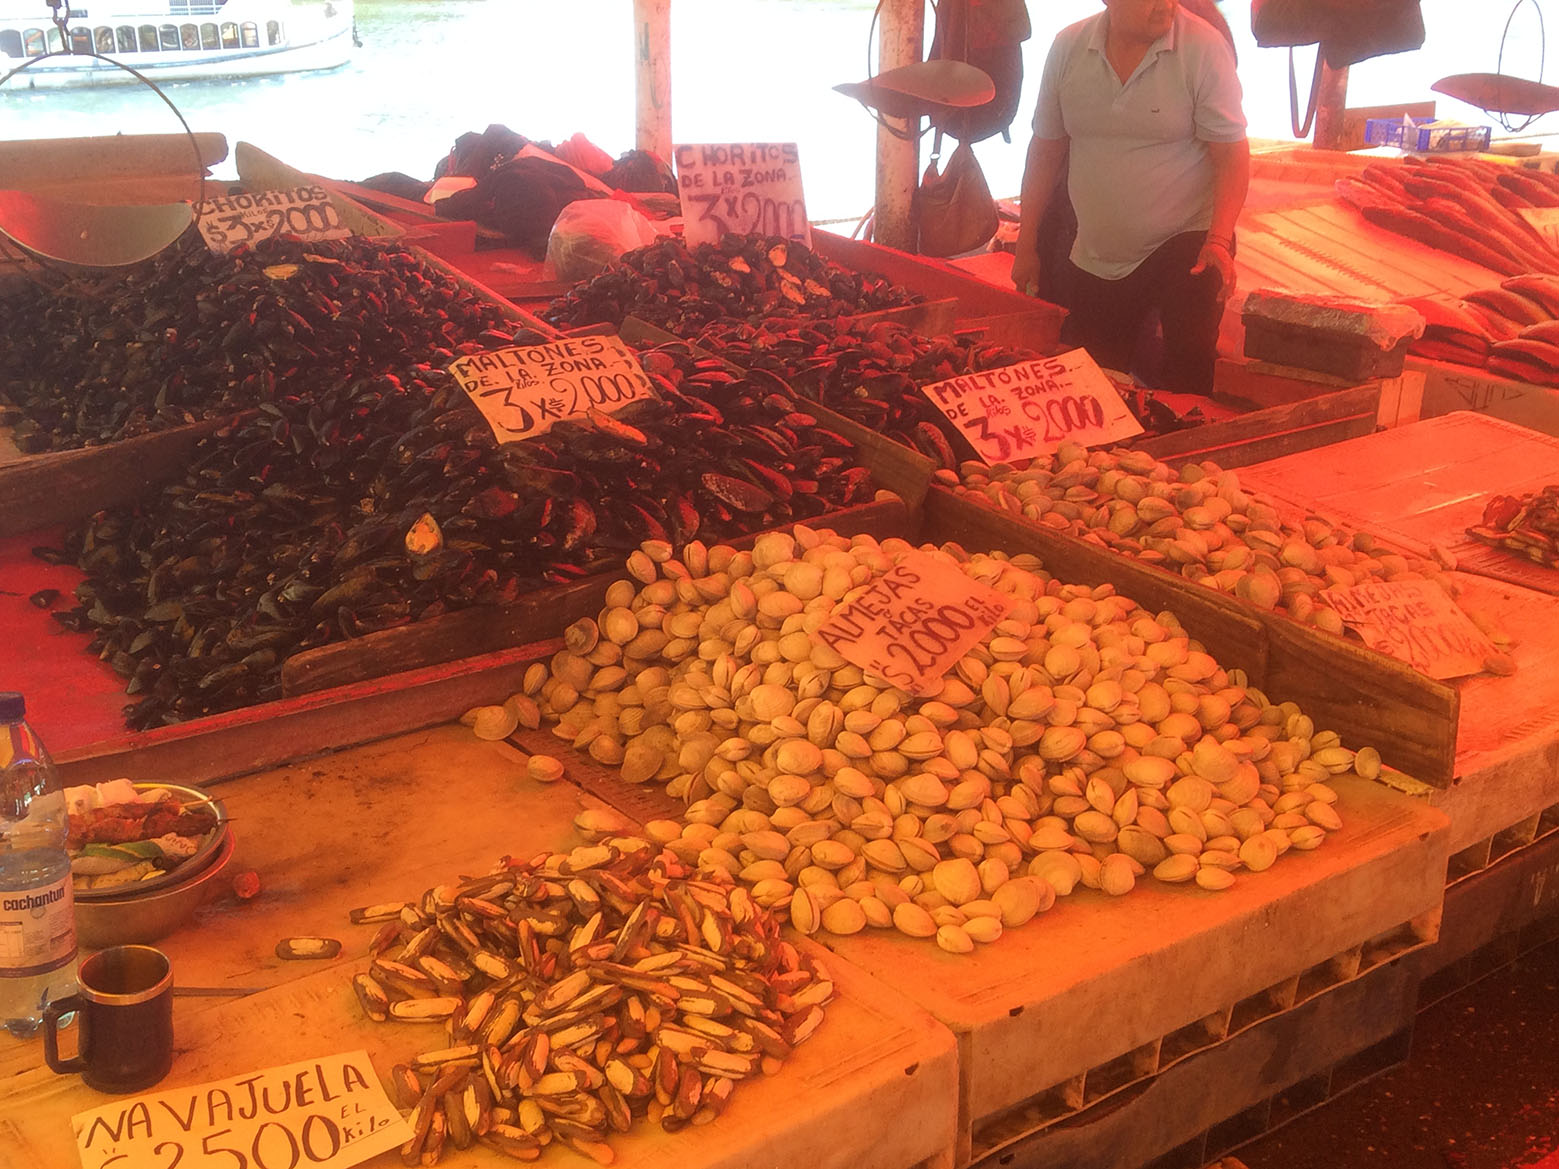 Fischmarkt in Valdivia - 1